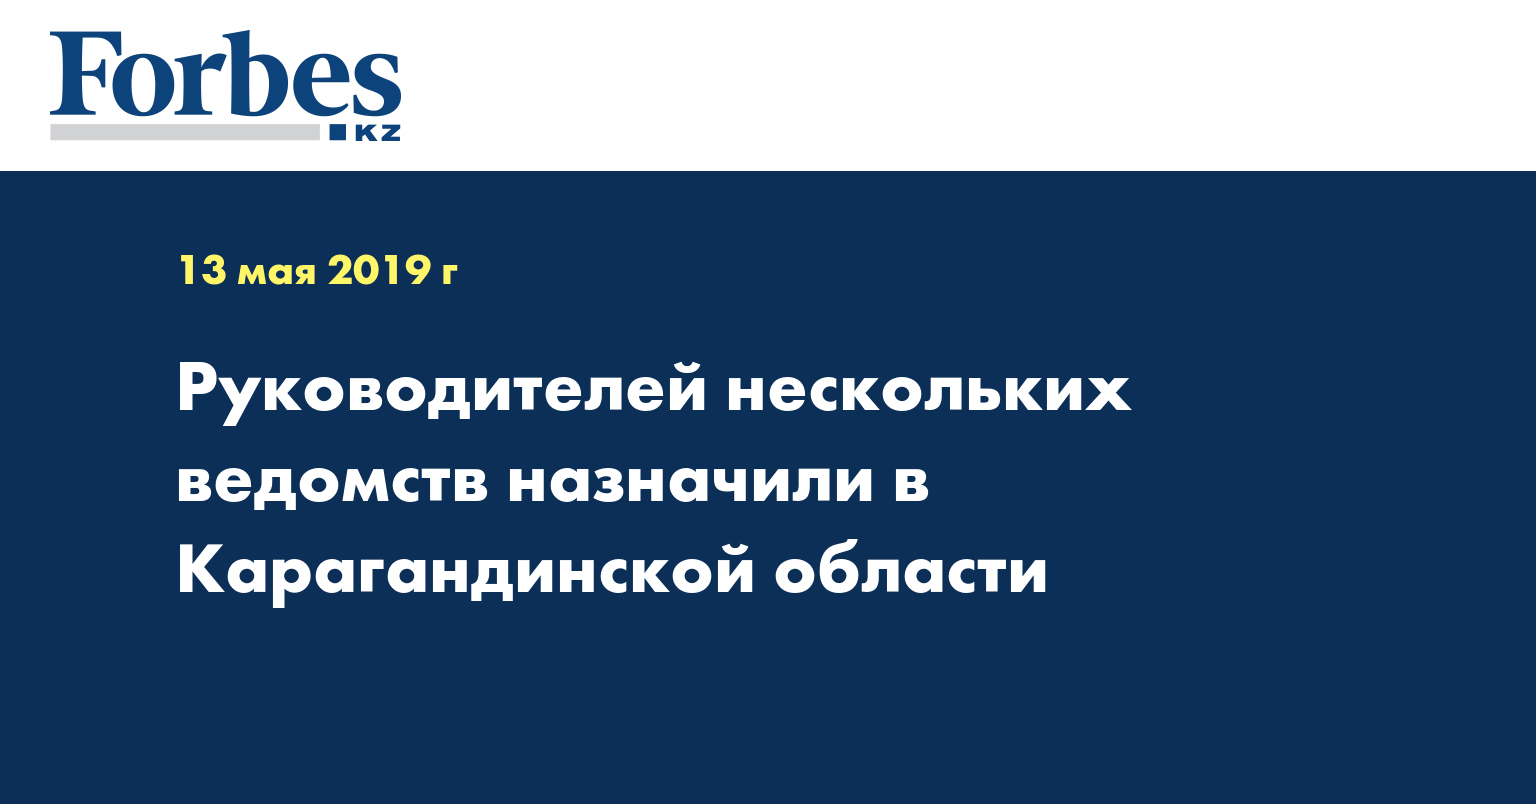 Руководителей нескольких ведомств назначили в Карагандинской области